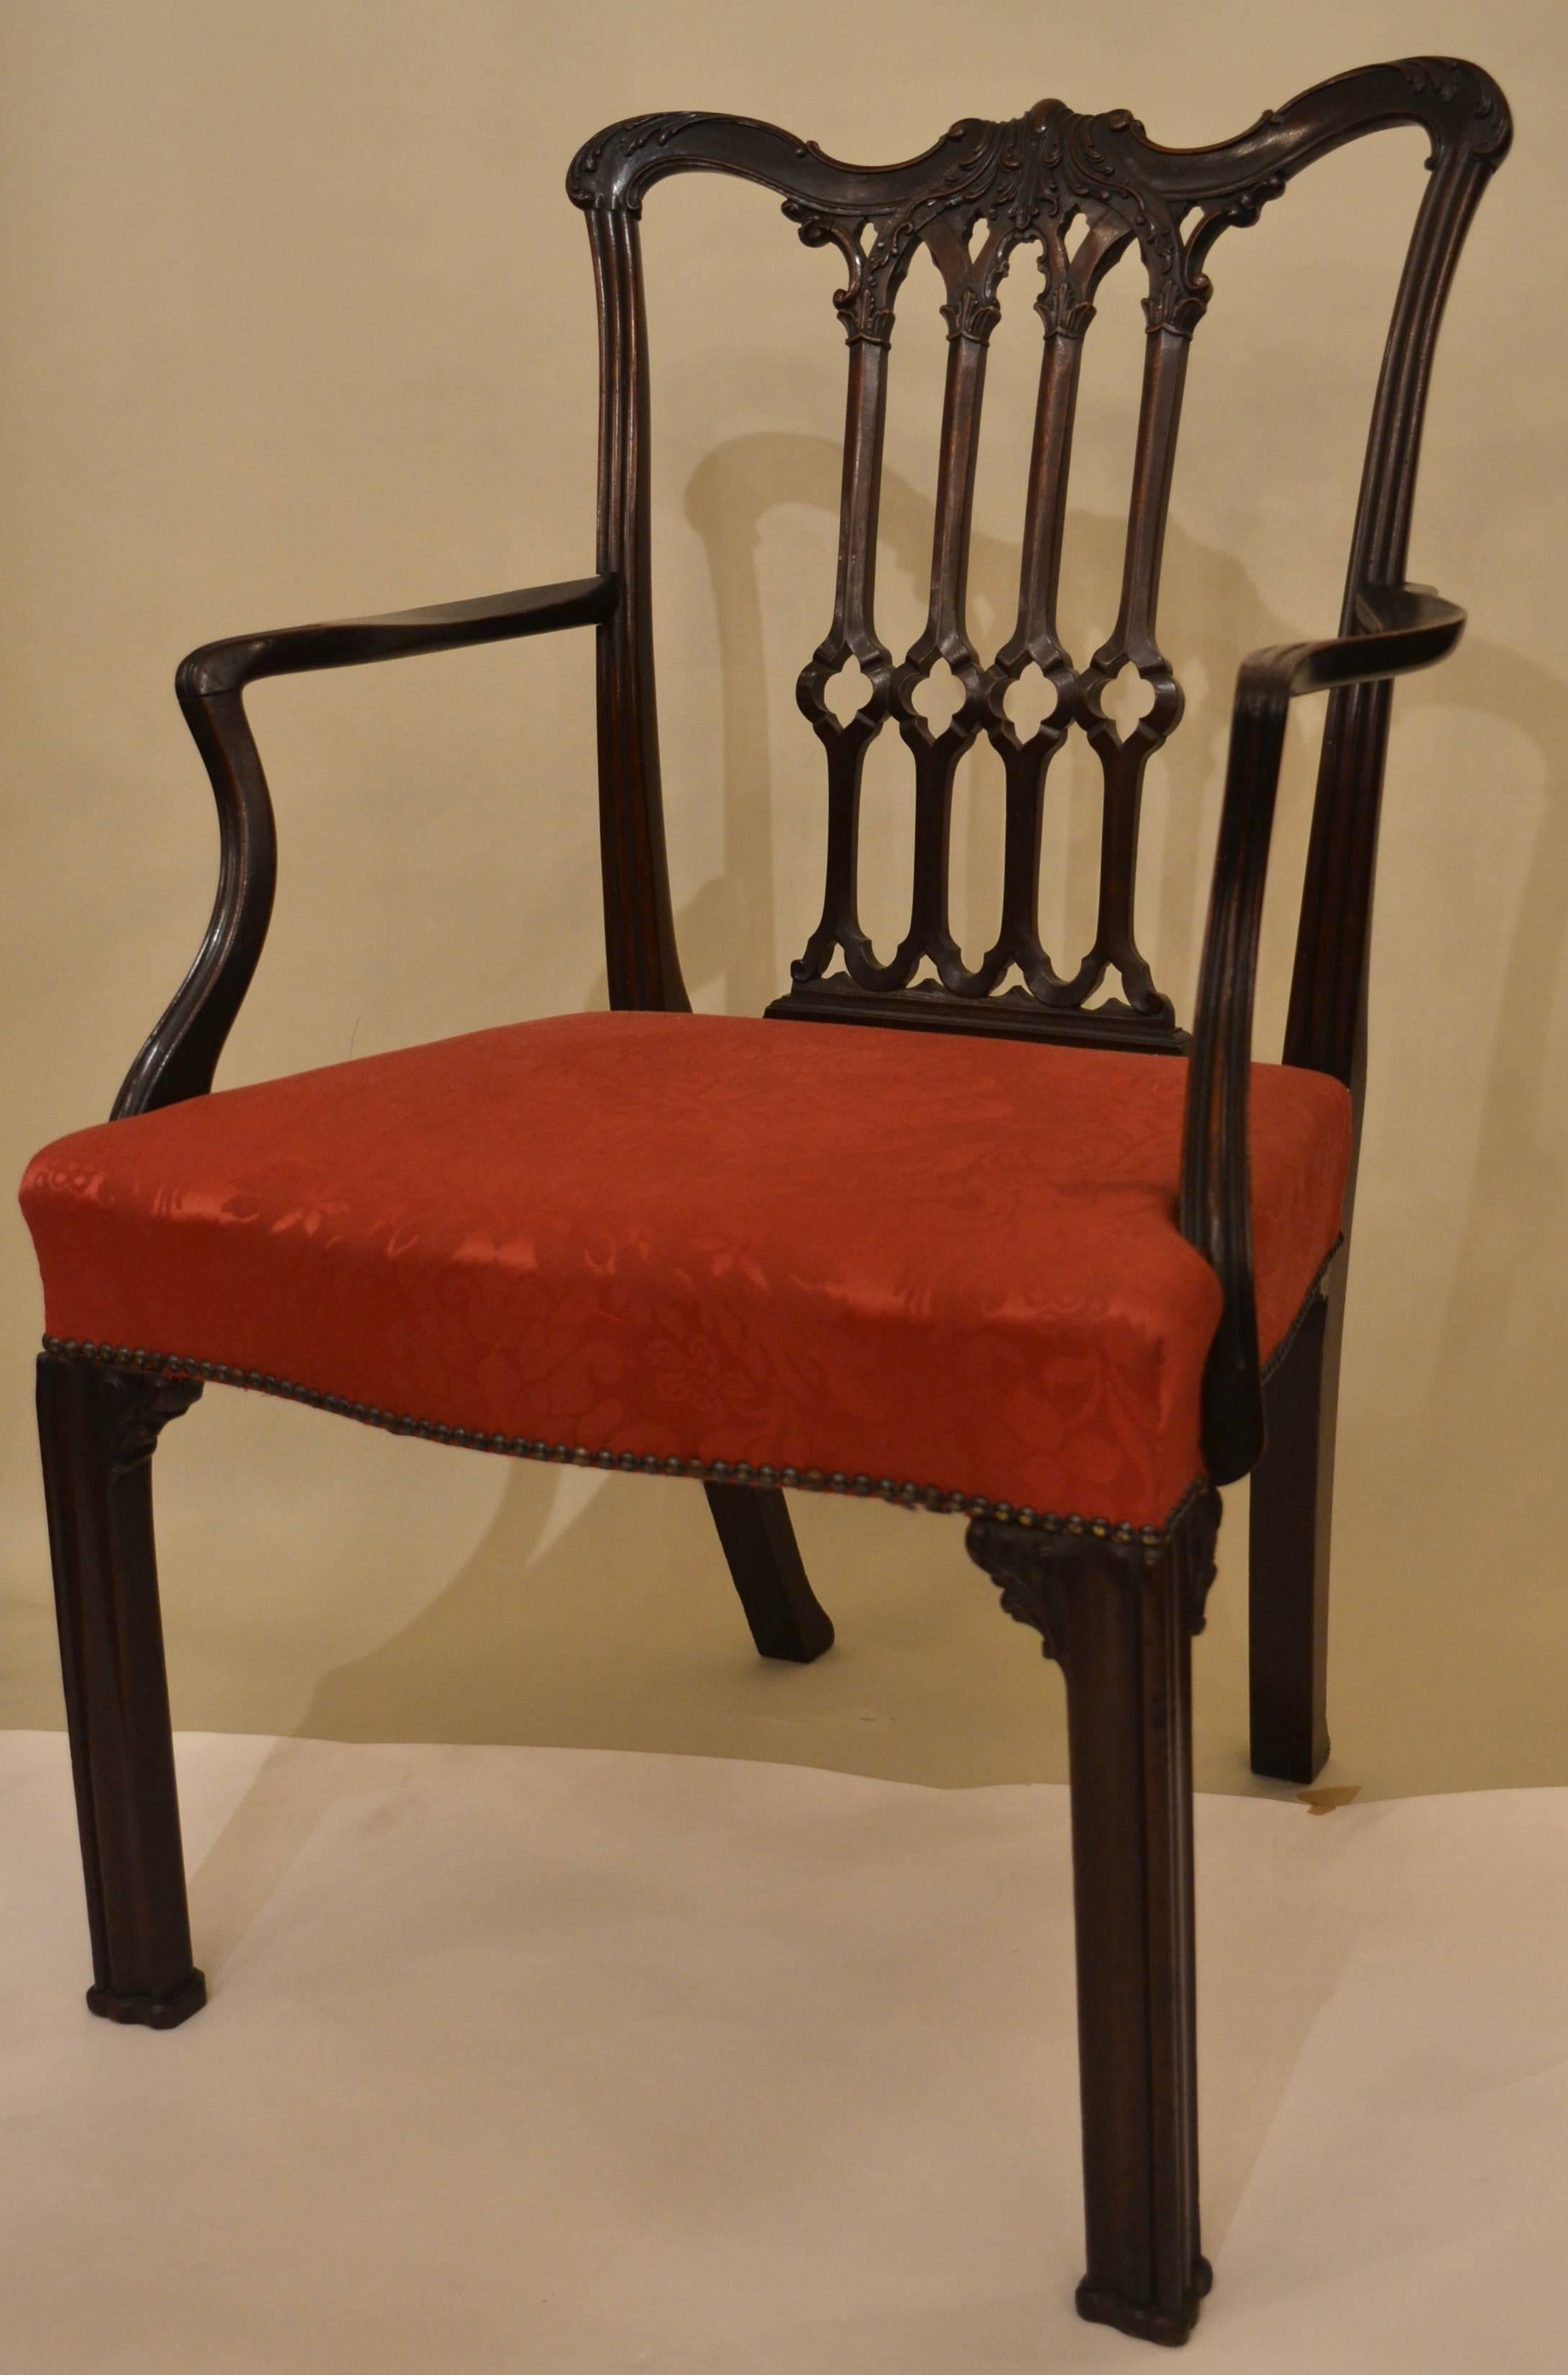 Un bel exemple de fauteuil de la période géorgienne.